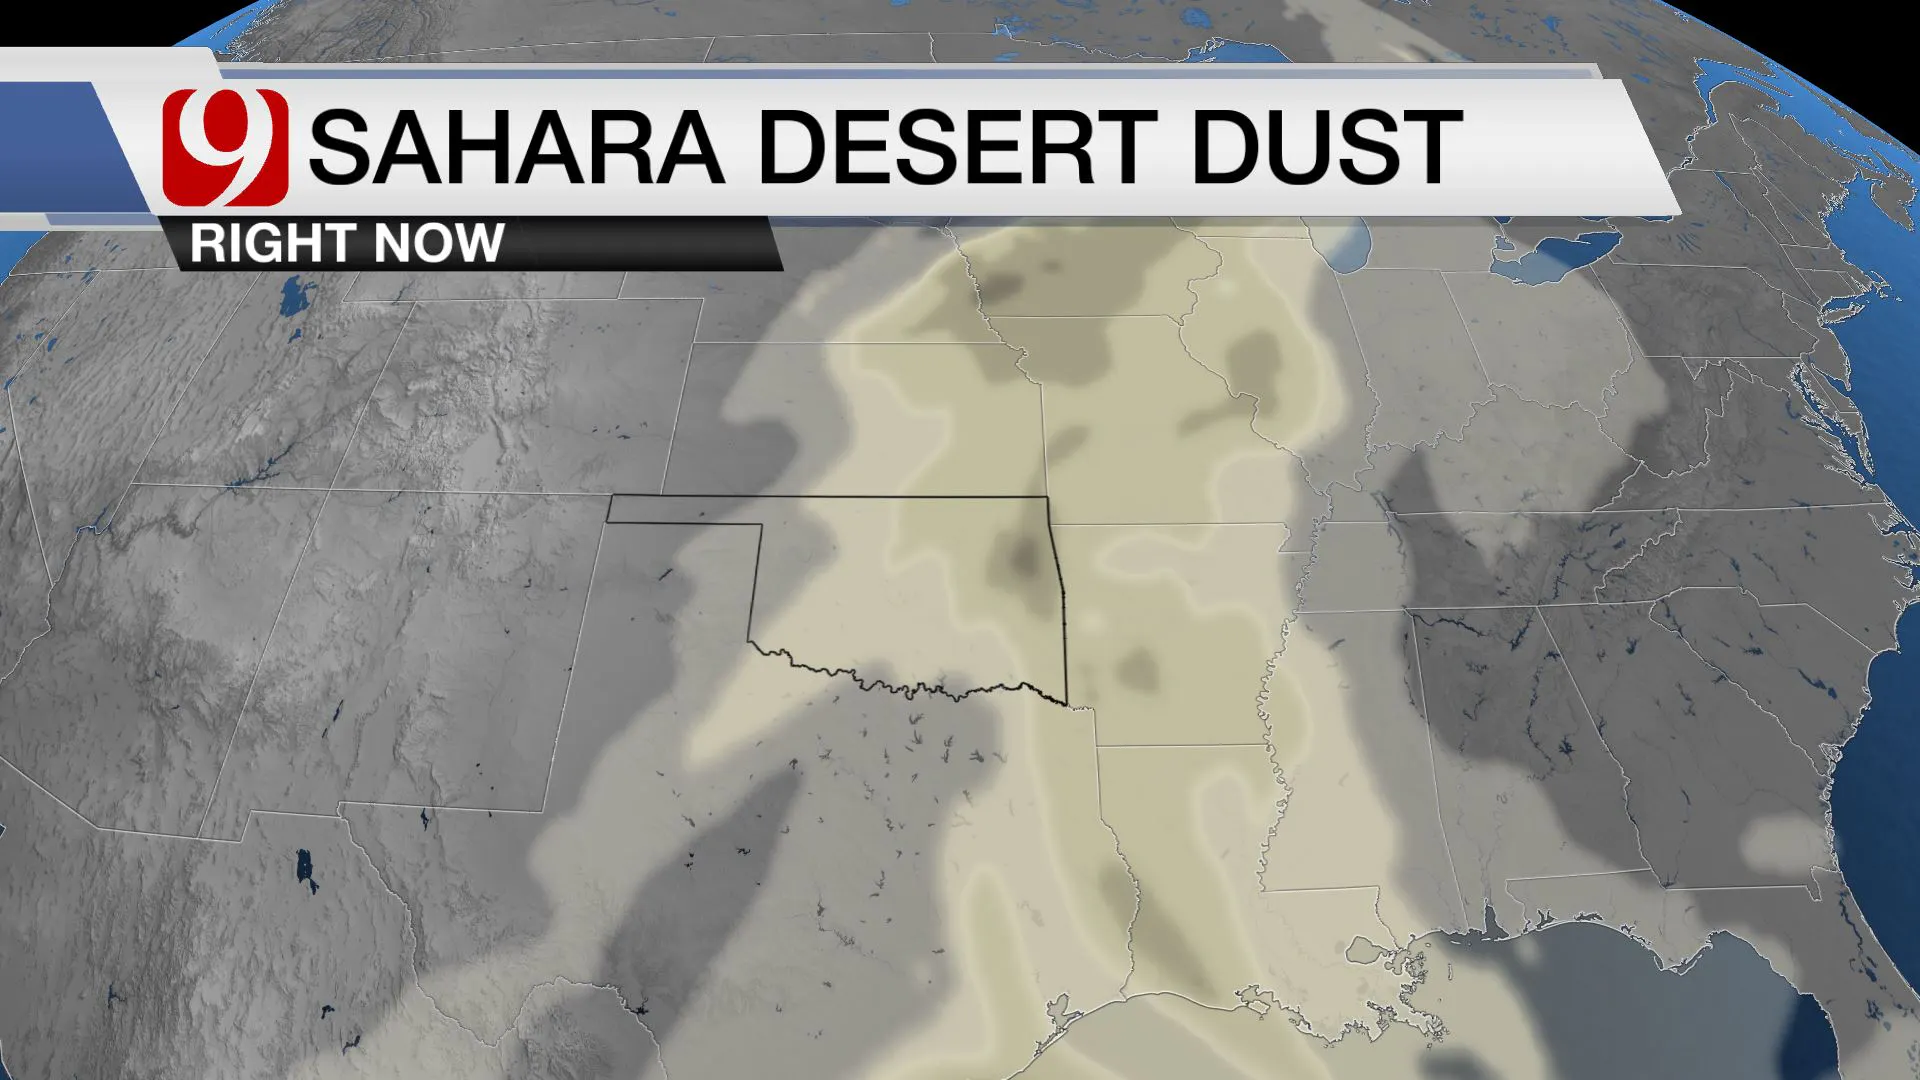 SAHARA DESERT DUST